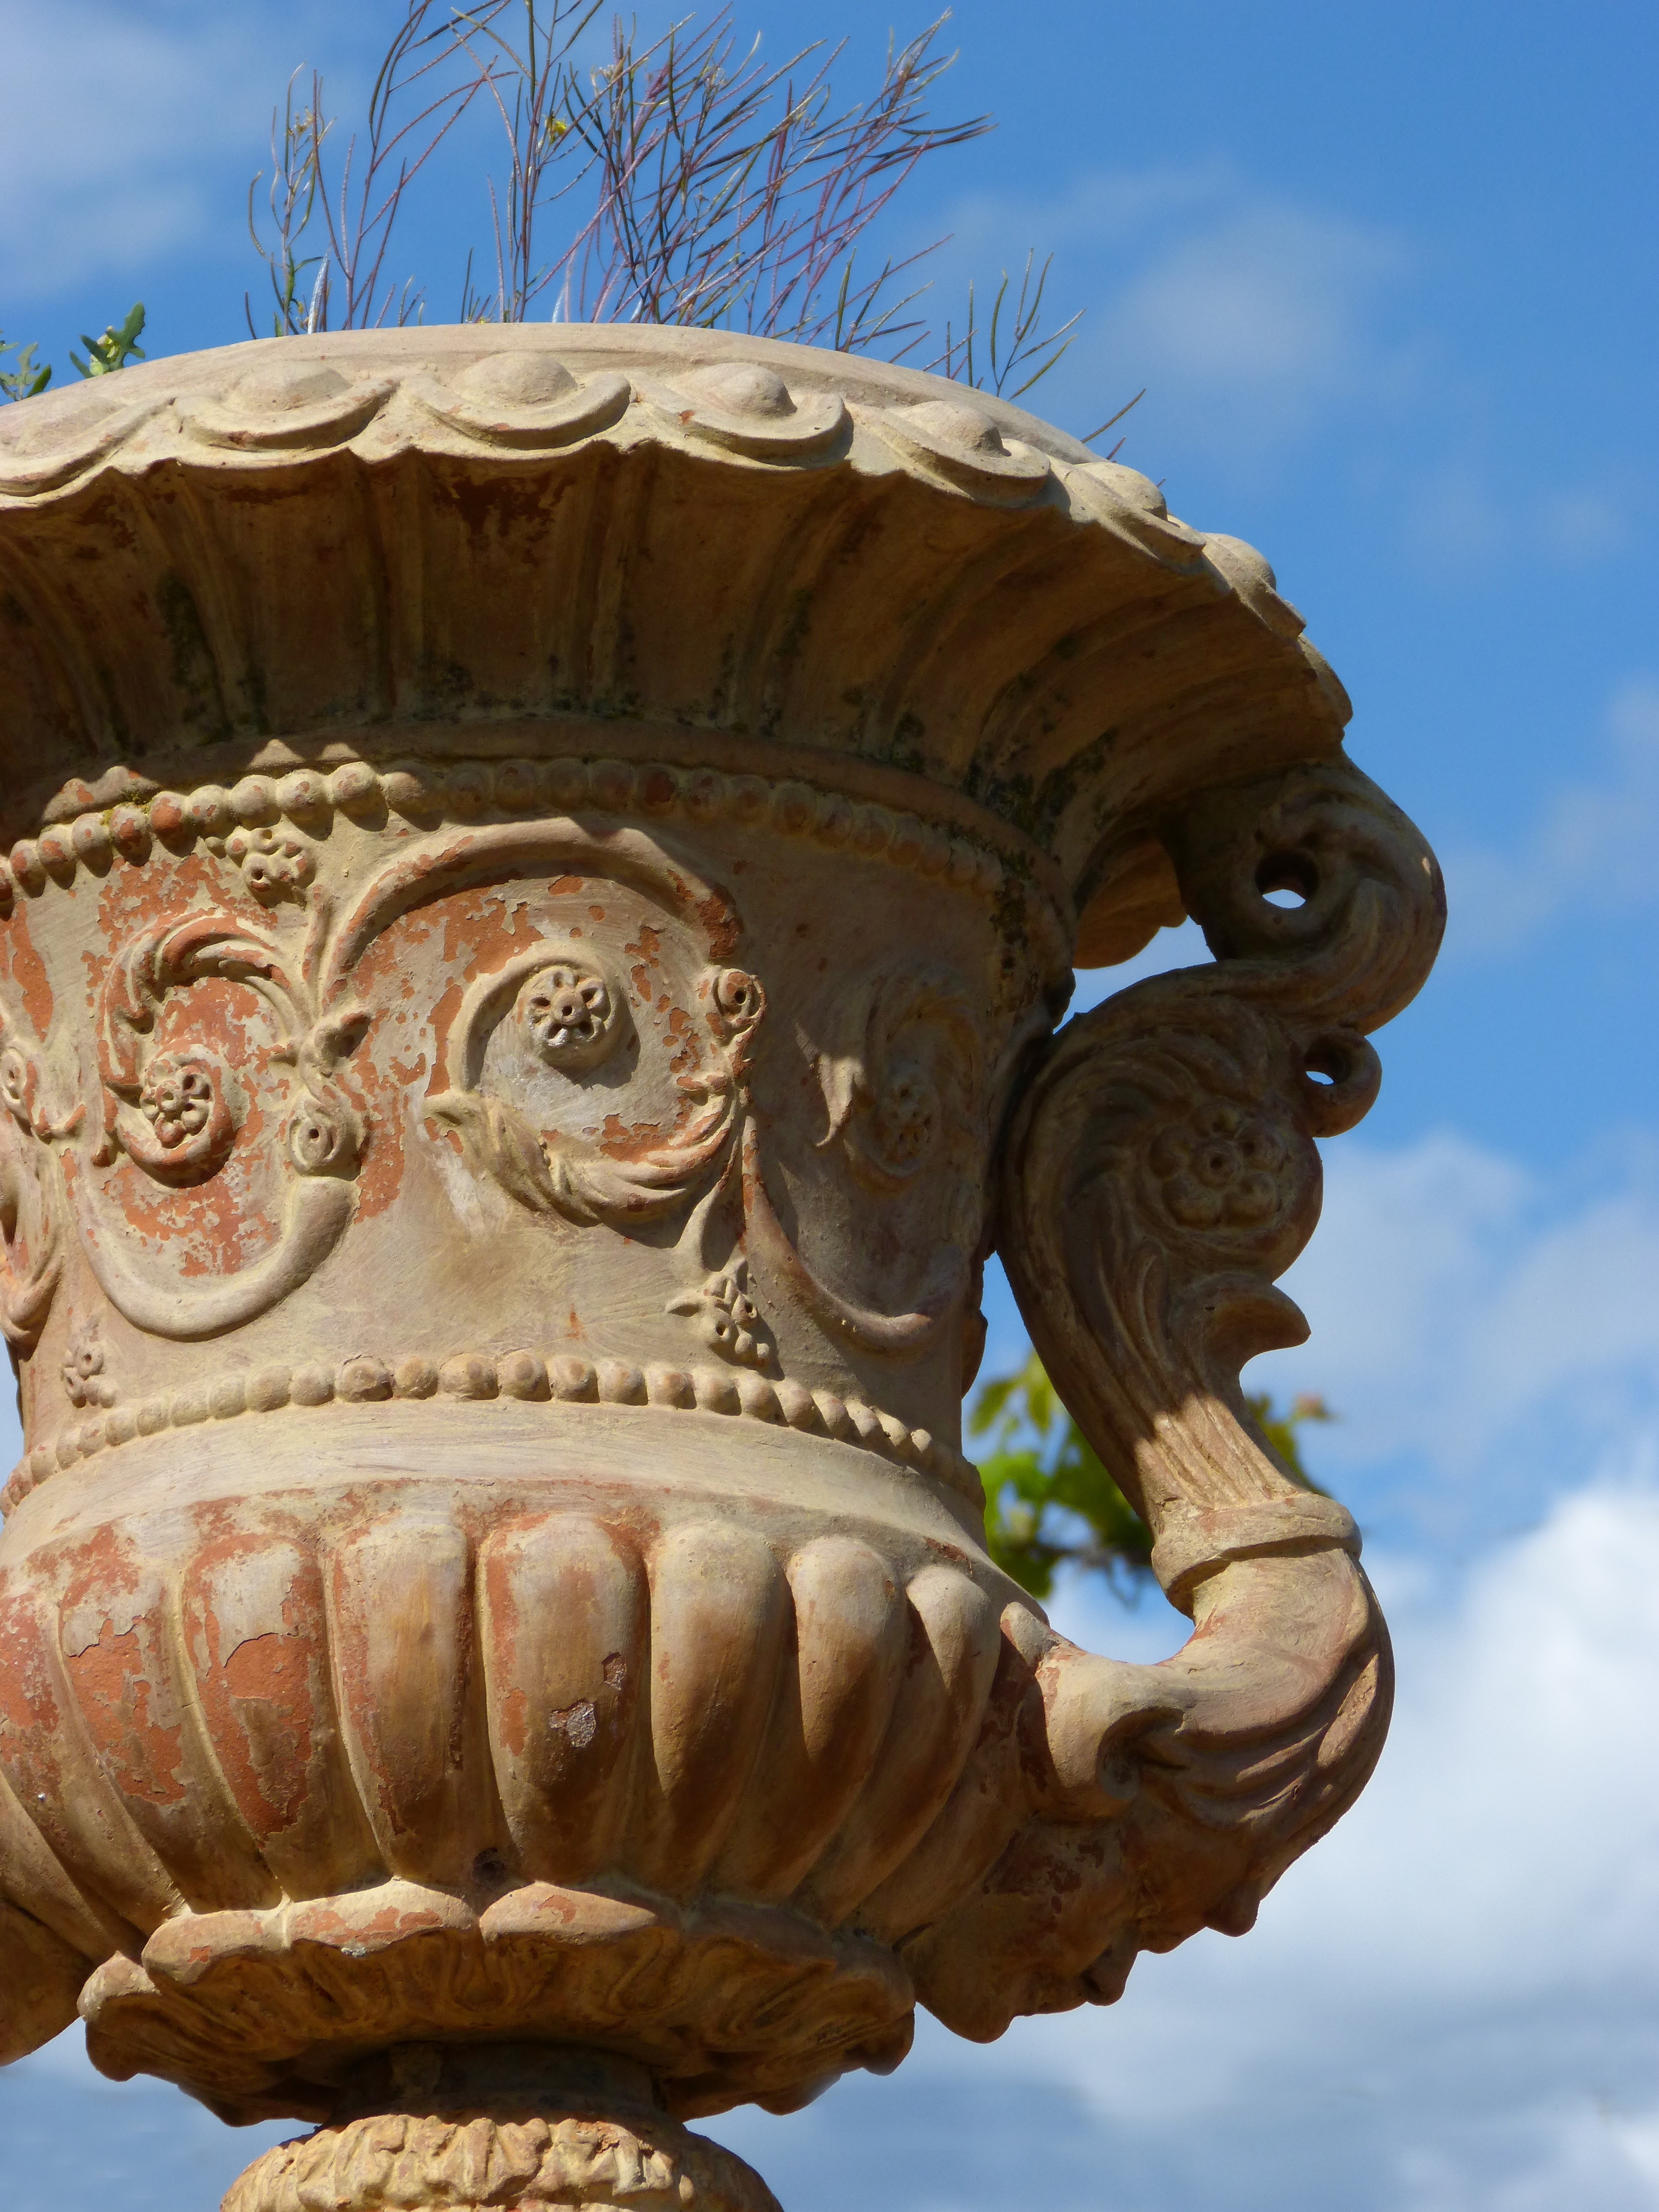 brown ceramic vase